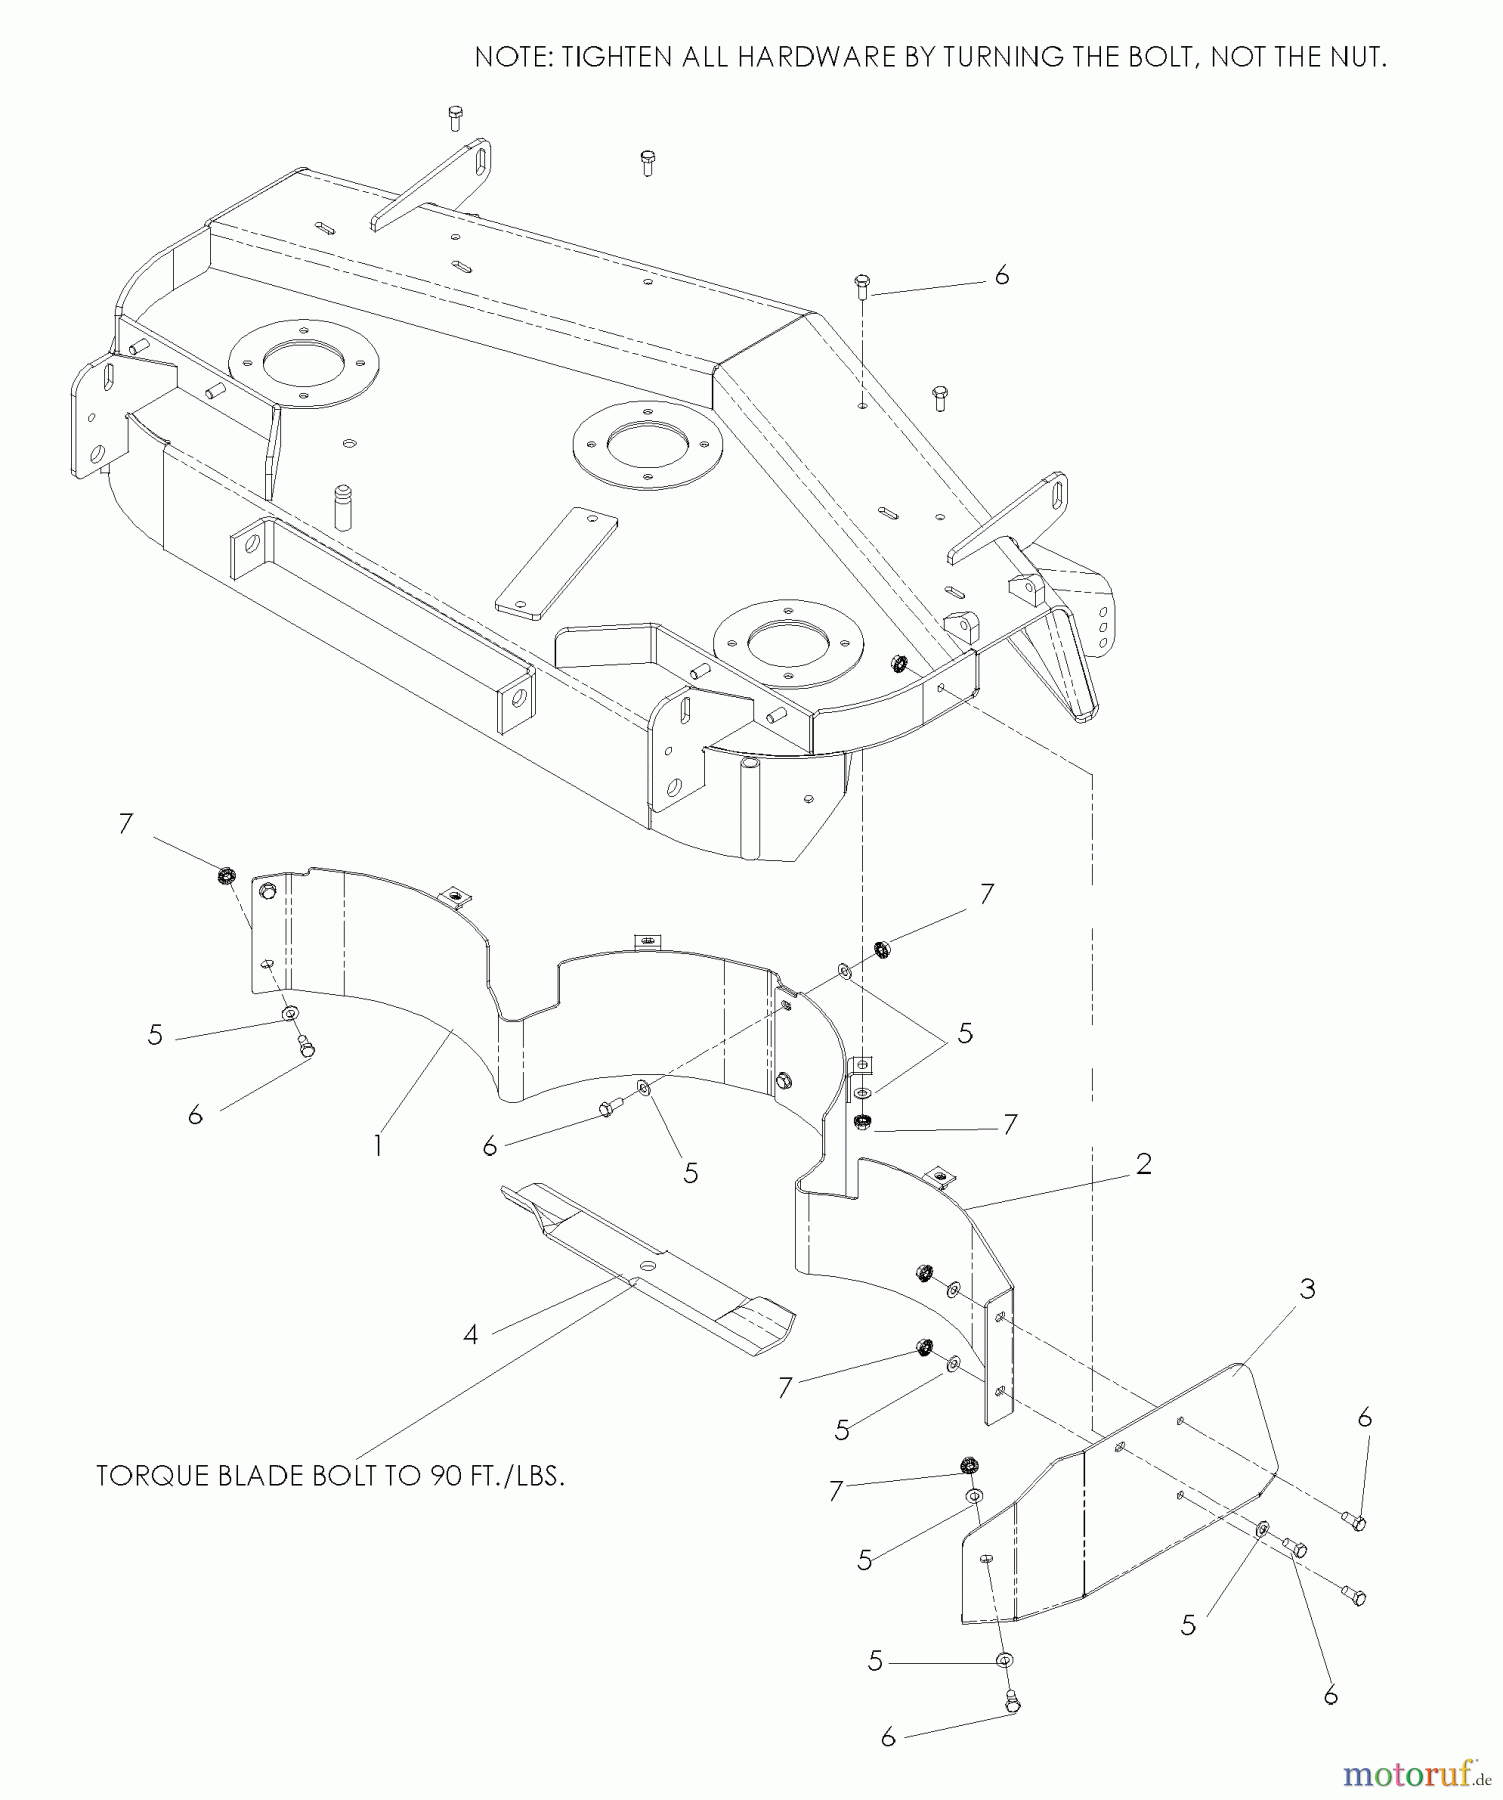  Husqvarna Nullwendekreismäher, Zero-Turn BZ 7234 D (968999264) - Husqvarna Zero-Turn Mower (2005-08 & After) Accessories Mulch Kit 72